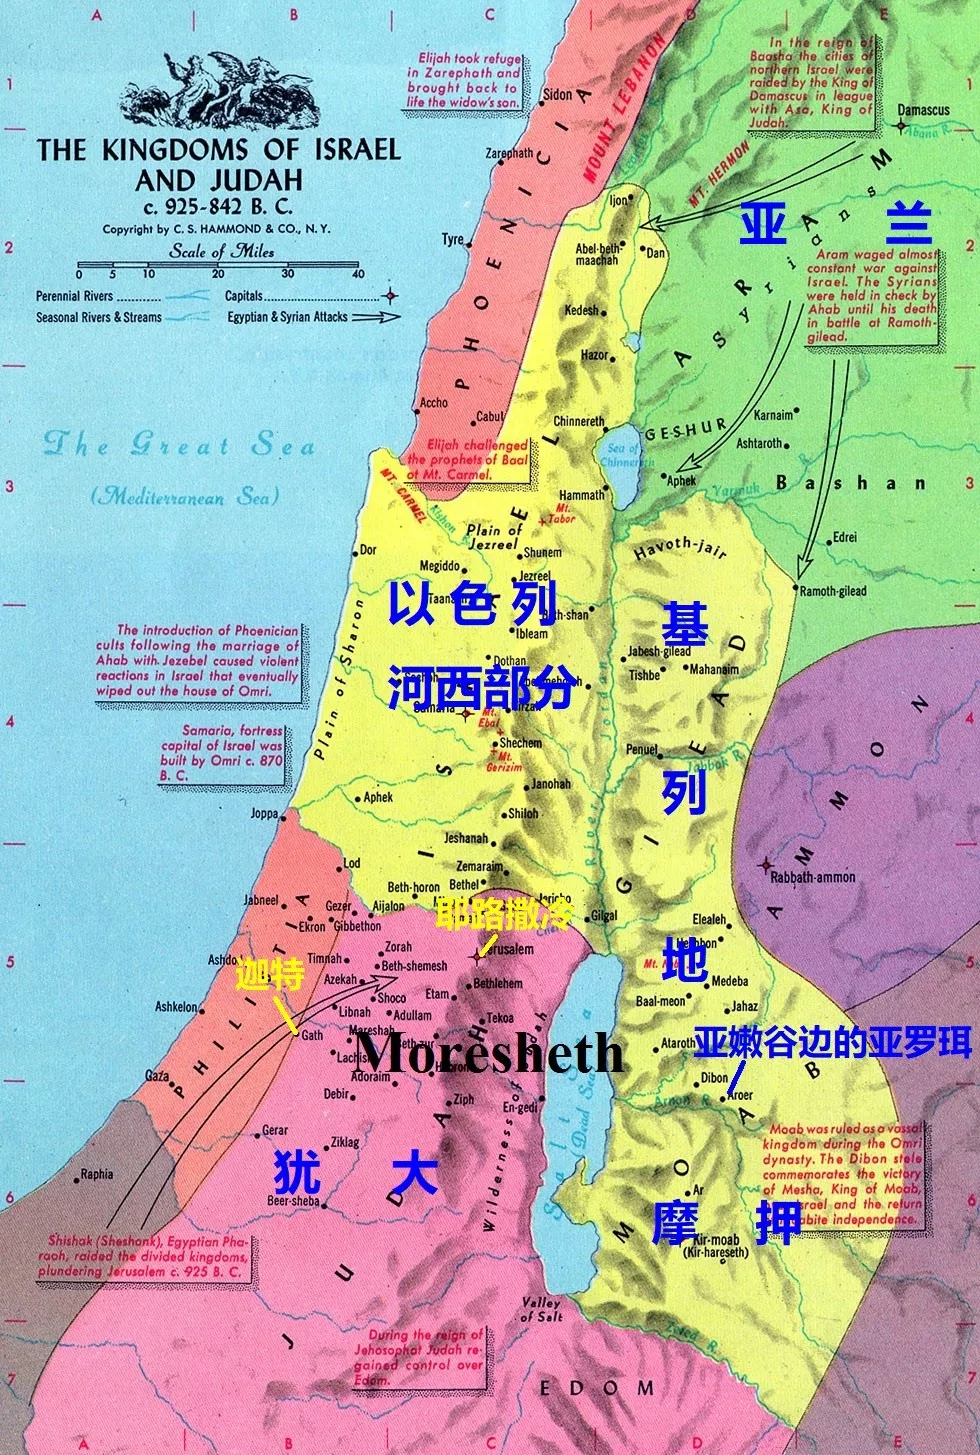 在中文版《圣经》中,「gilead」作为以色列约旦河东侧的一个地名,被